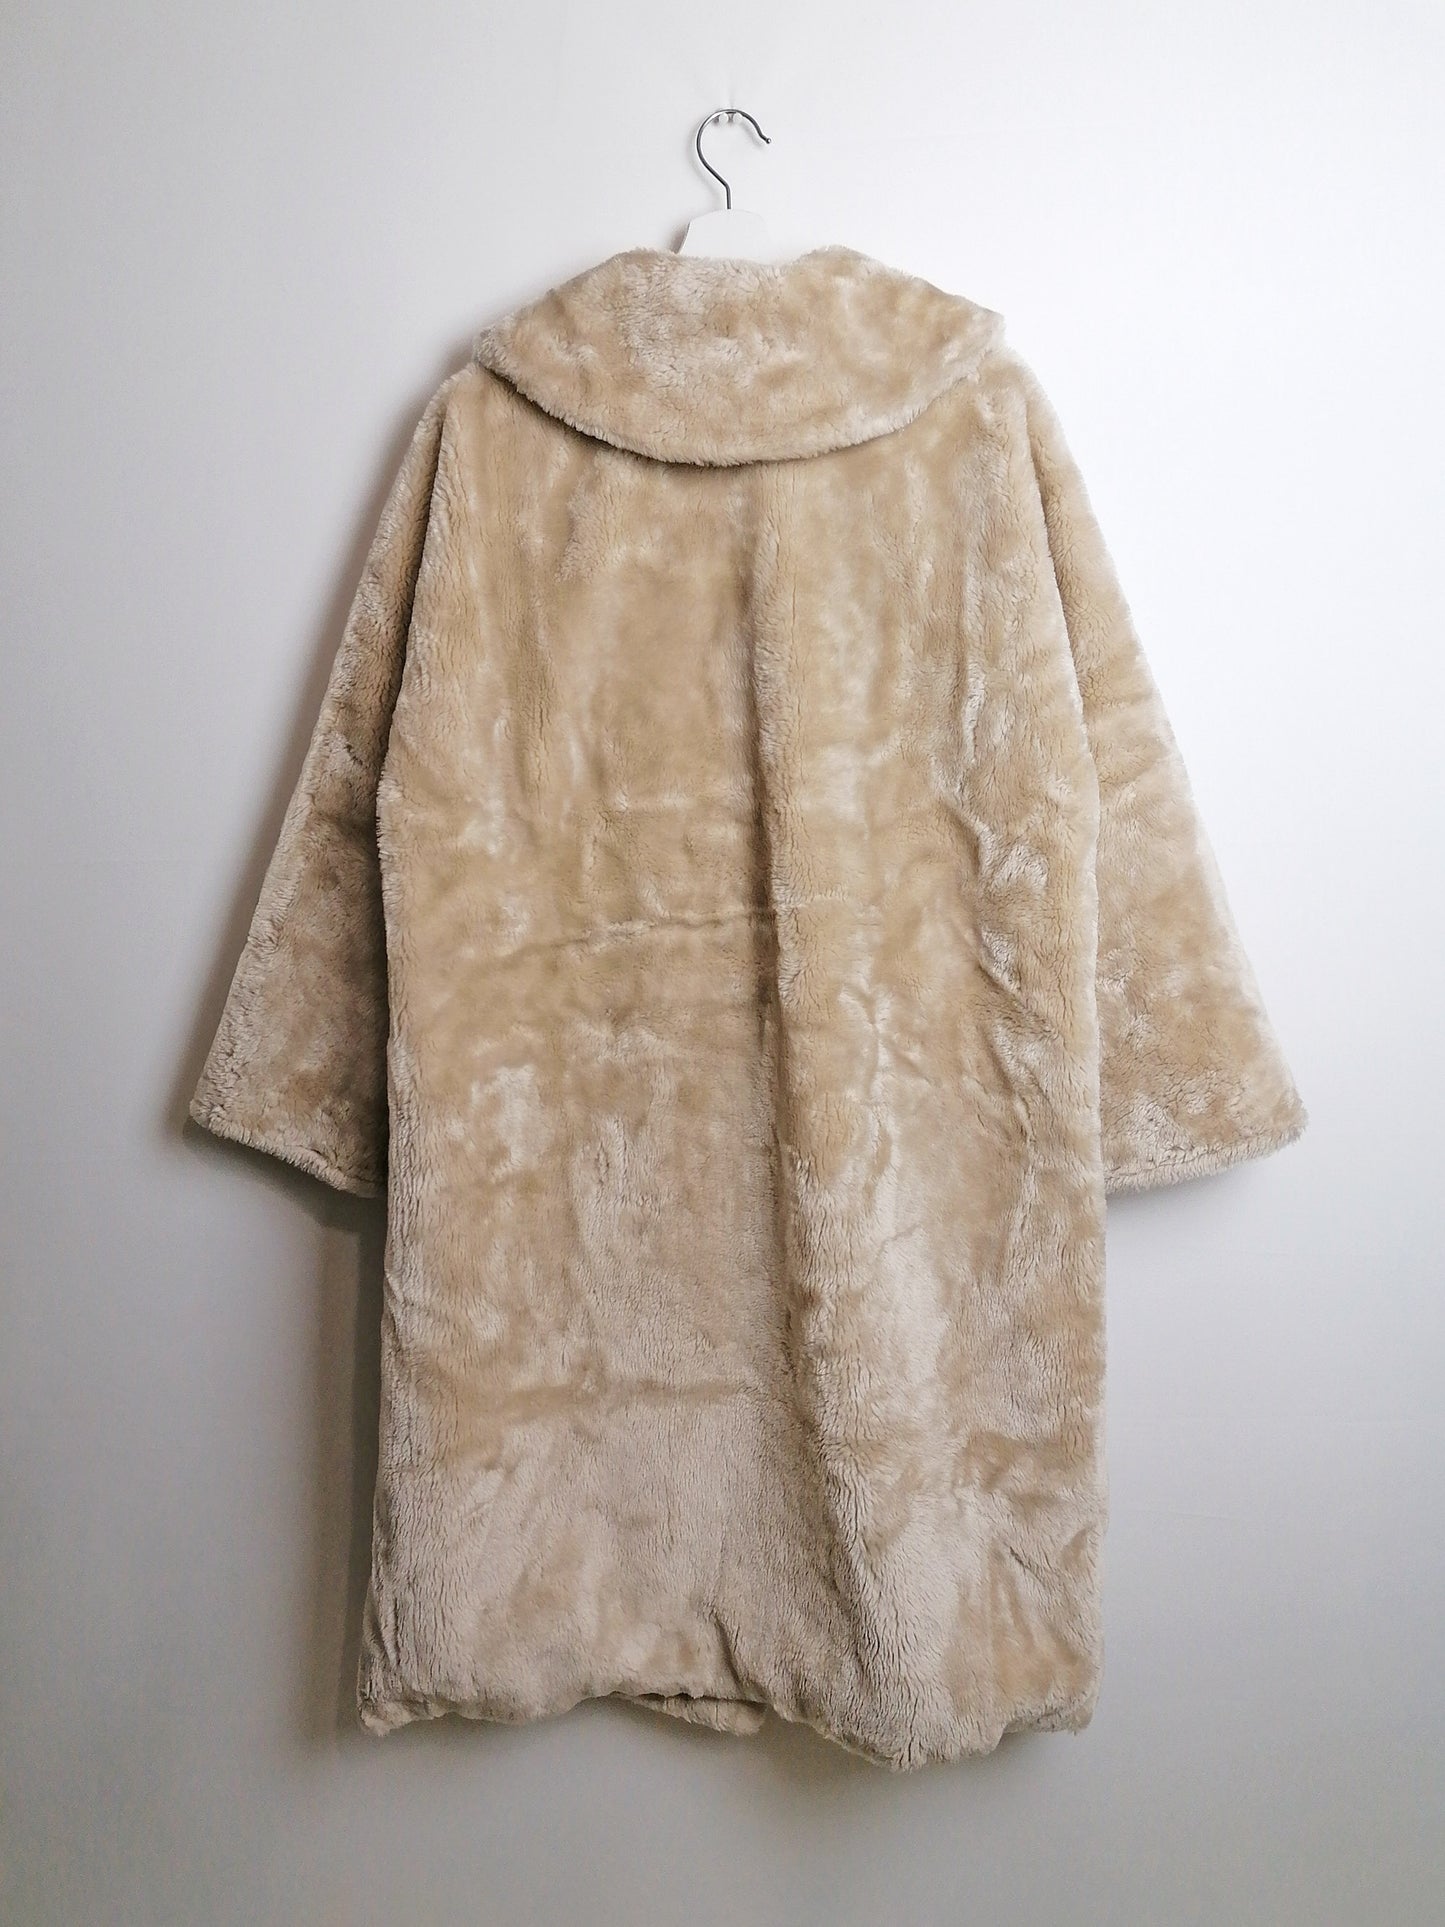 Vintage 80's BORGANA Faux Fur Long Coat Plush Beige Nude - size M-L